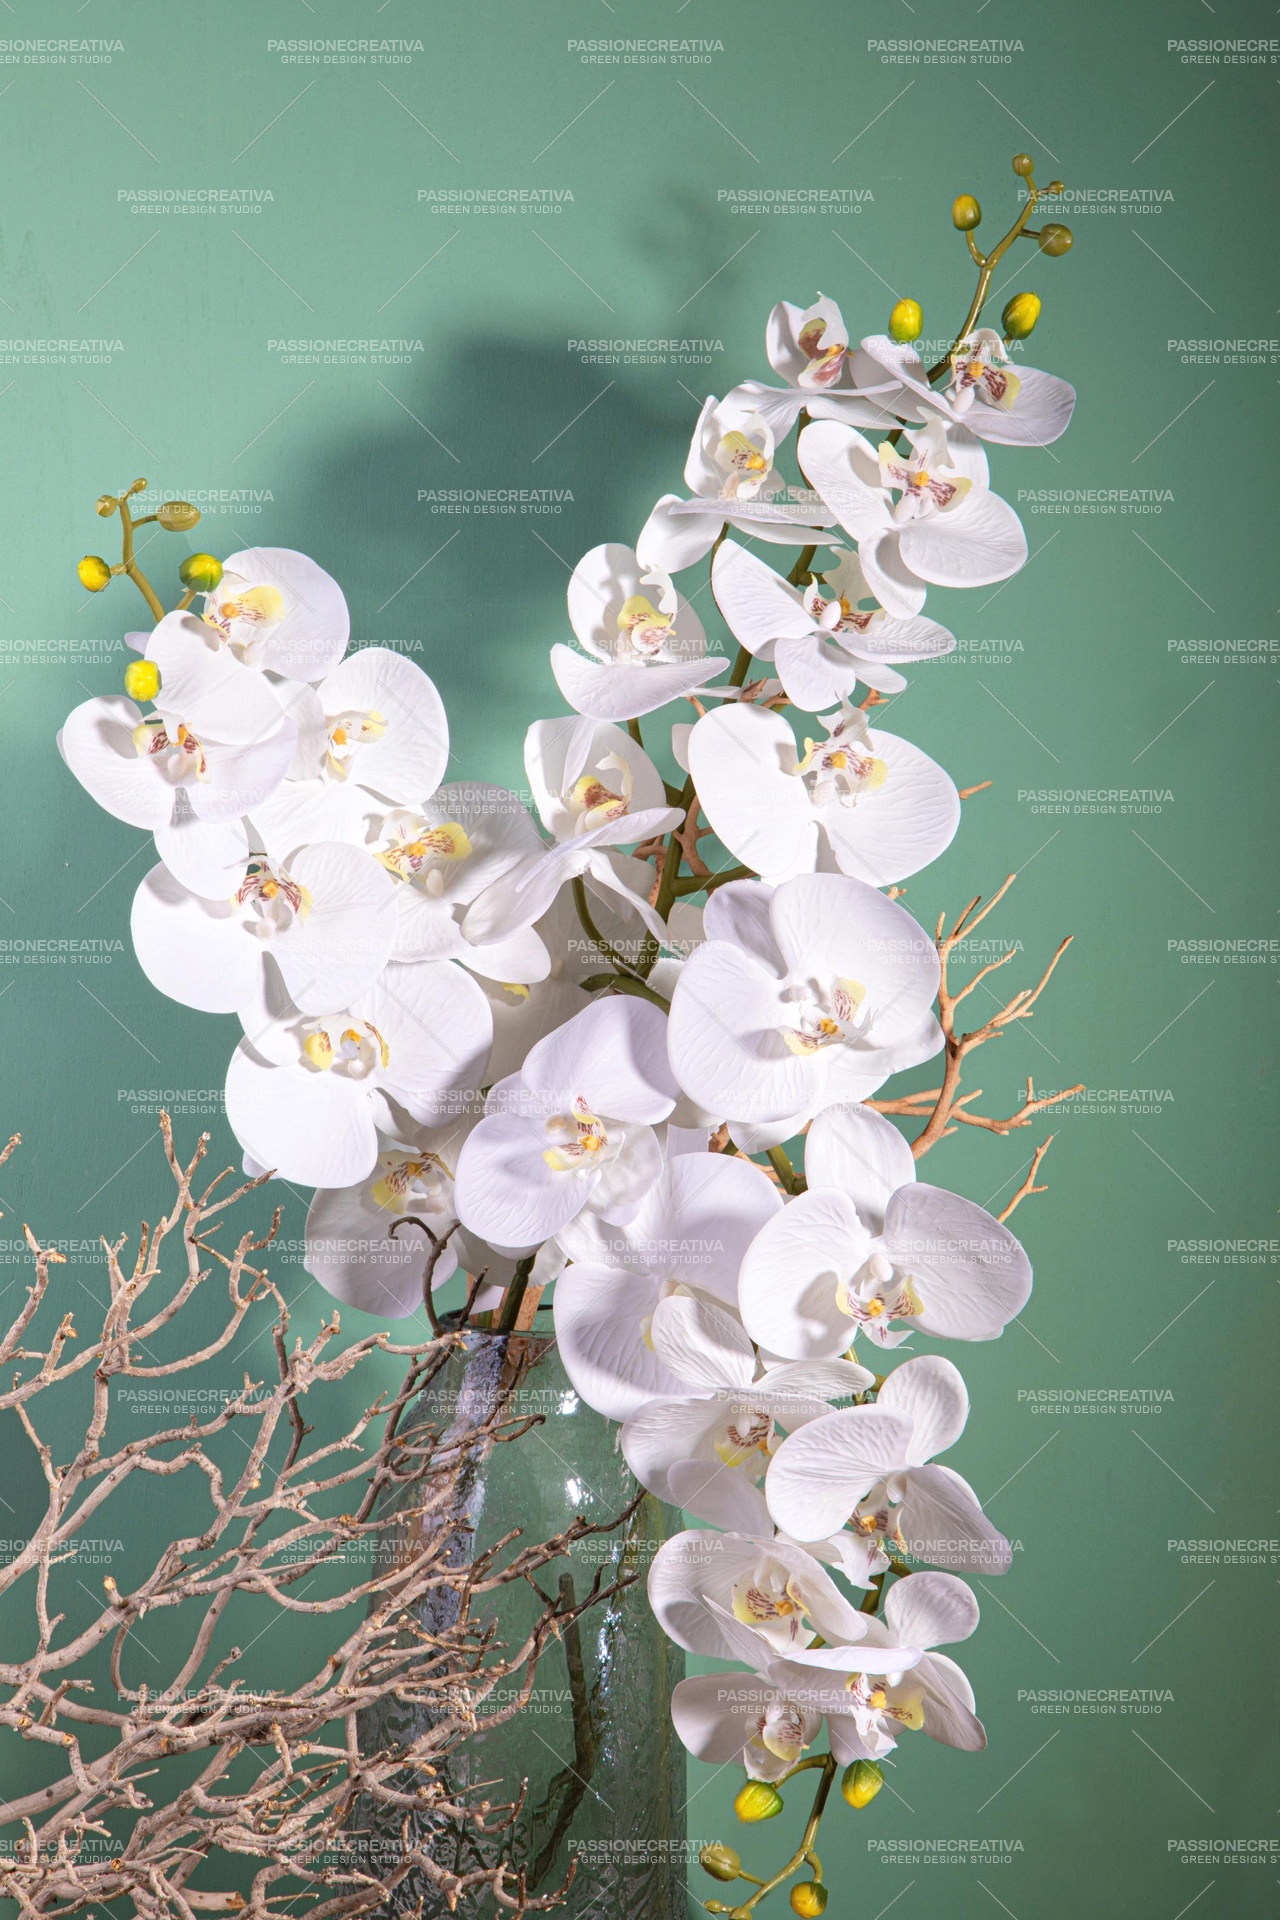 Phaleonopsis 9 fiori h 110 cm x 6 pz. - orchidea artificiale, DECORAZIONI